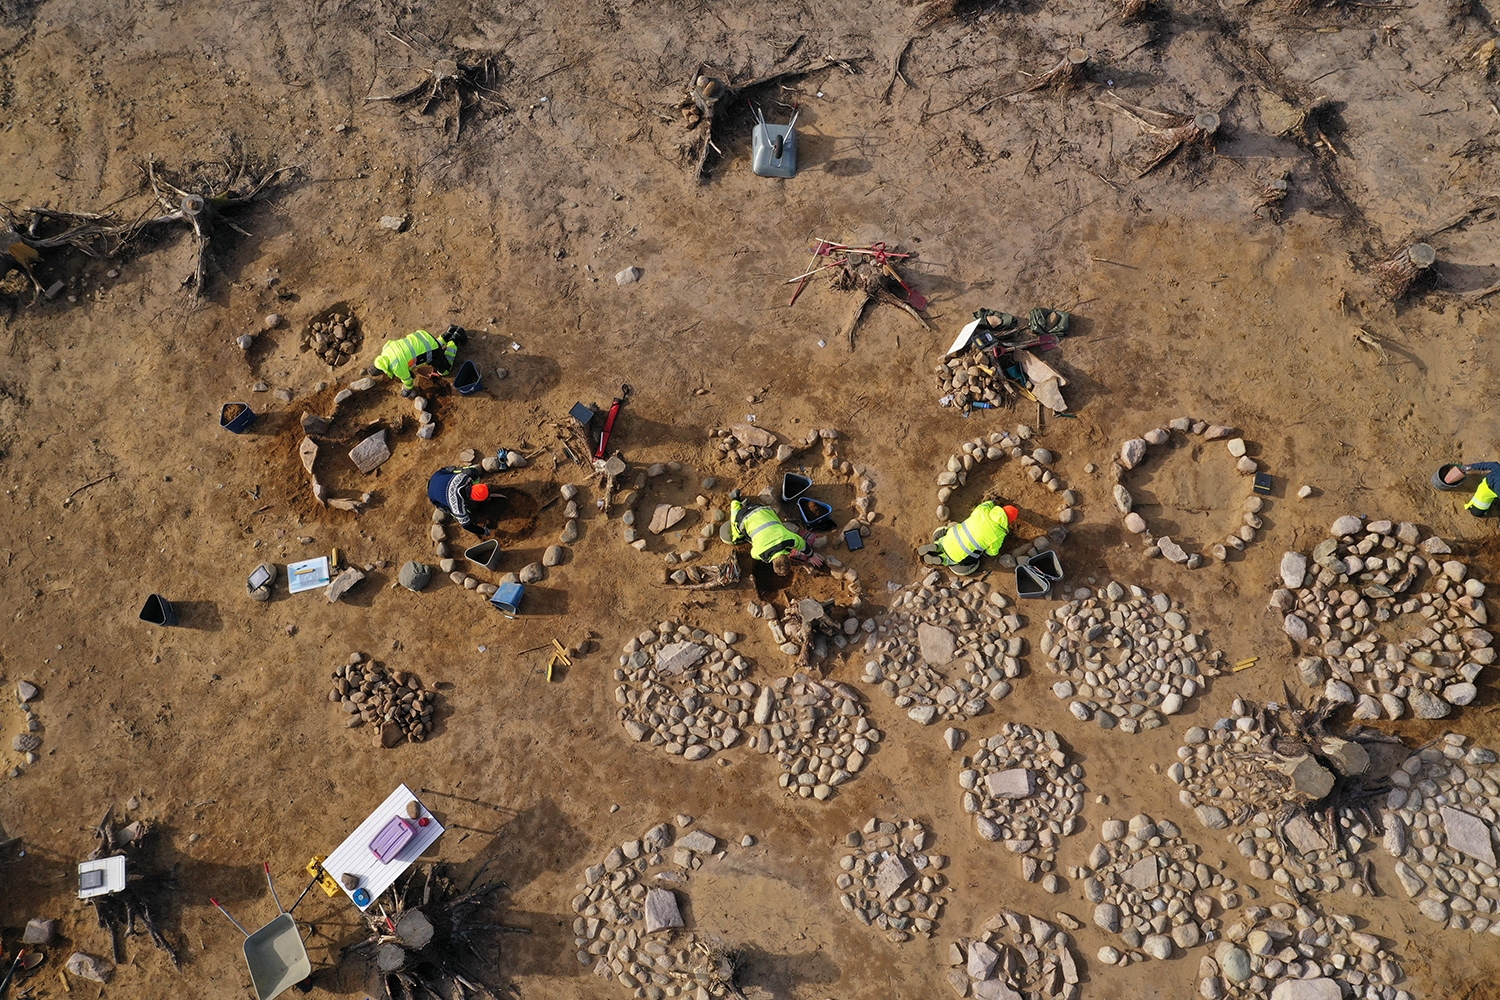 Gravfeltet ble funnet nær Fredrikstad i Østfold, som er rikt på kulturminner. Etter avtorving og opprensing satt arkeologene med over 40 graver, runde eller ovale steinlegginger, mellom en til to meter i diameter.